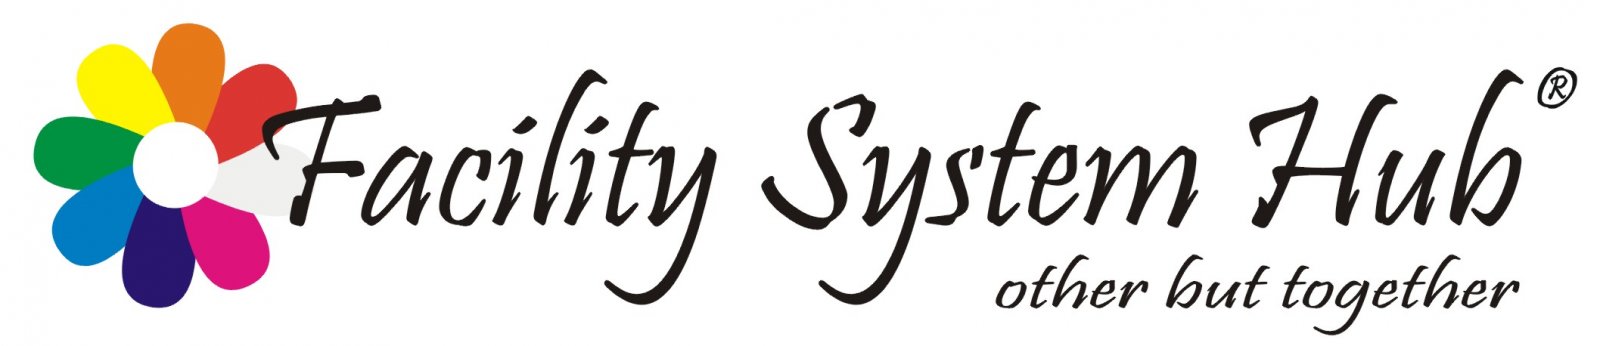 Facility System Hub logo